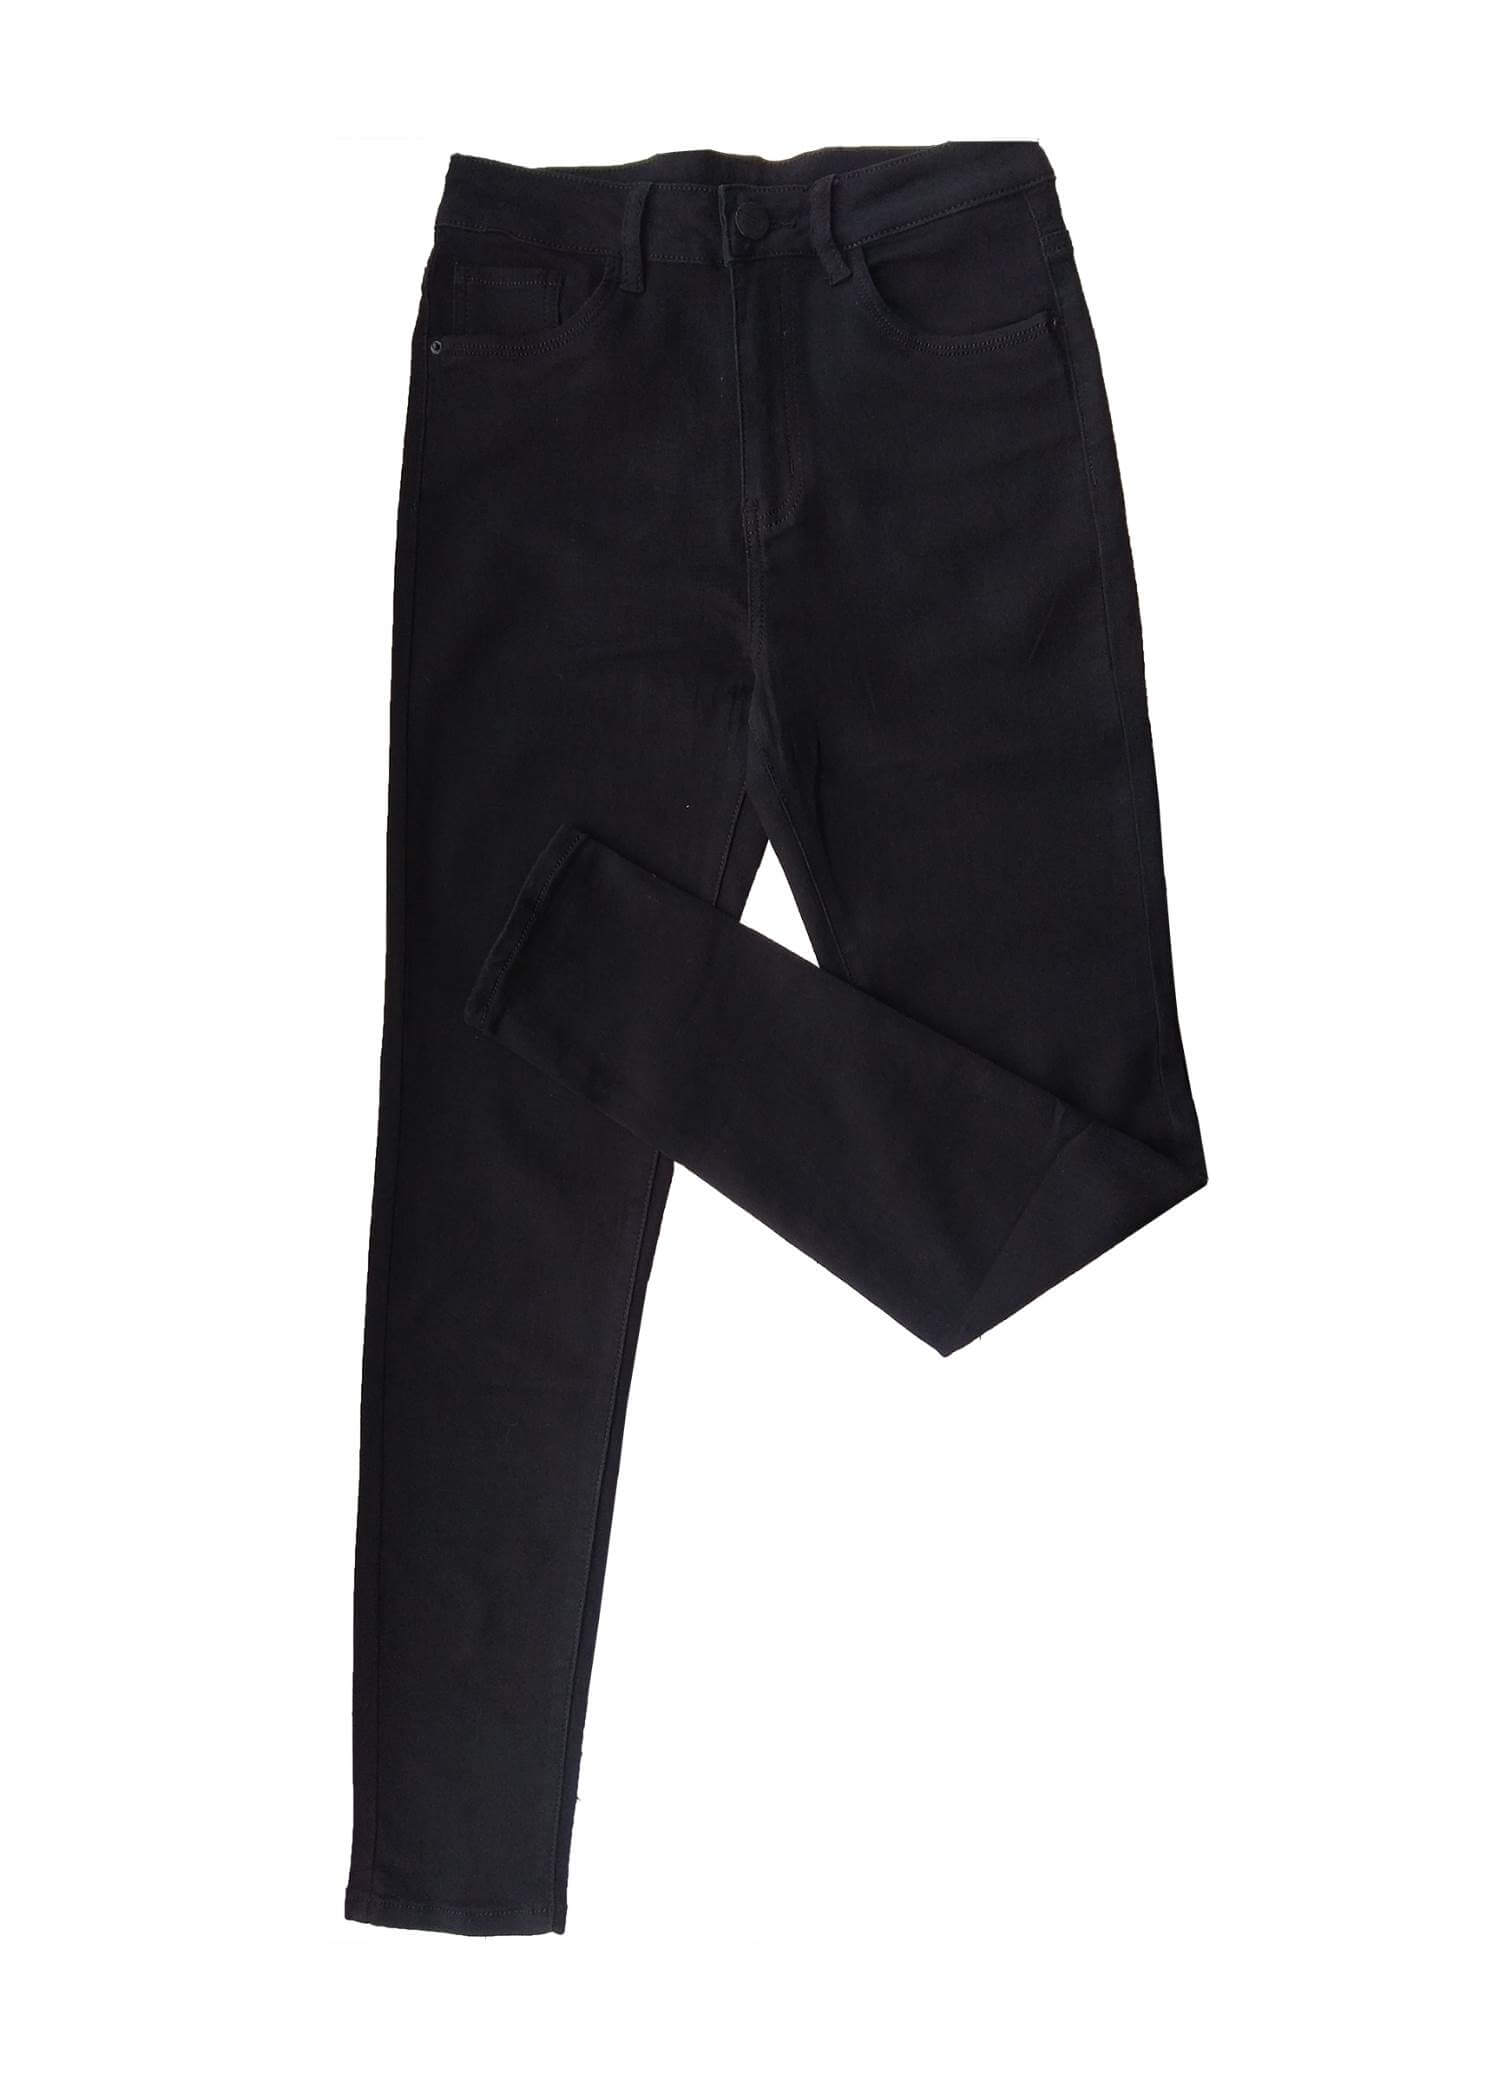 черные женские узкие джинсы с высокой посадкой